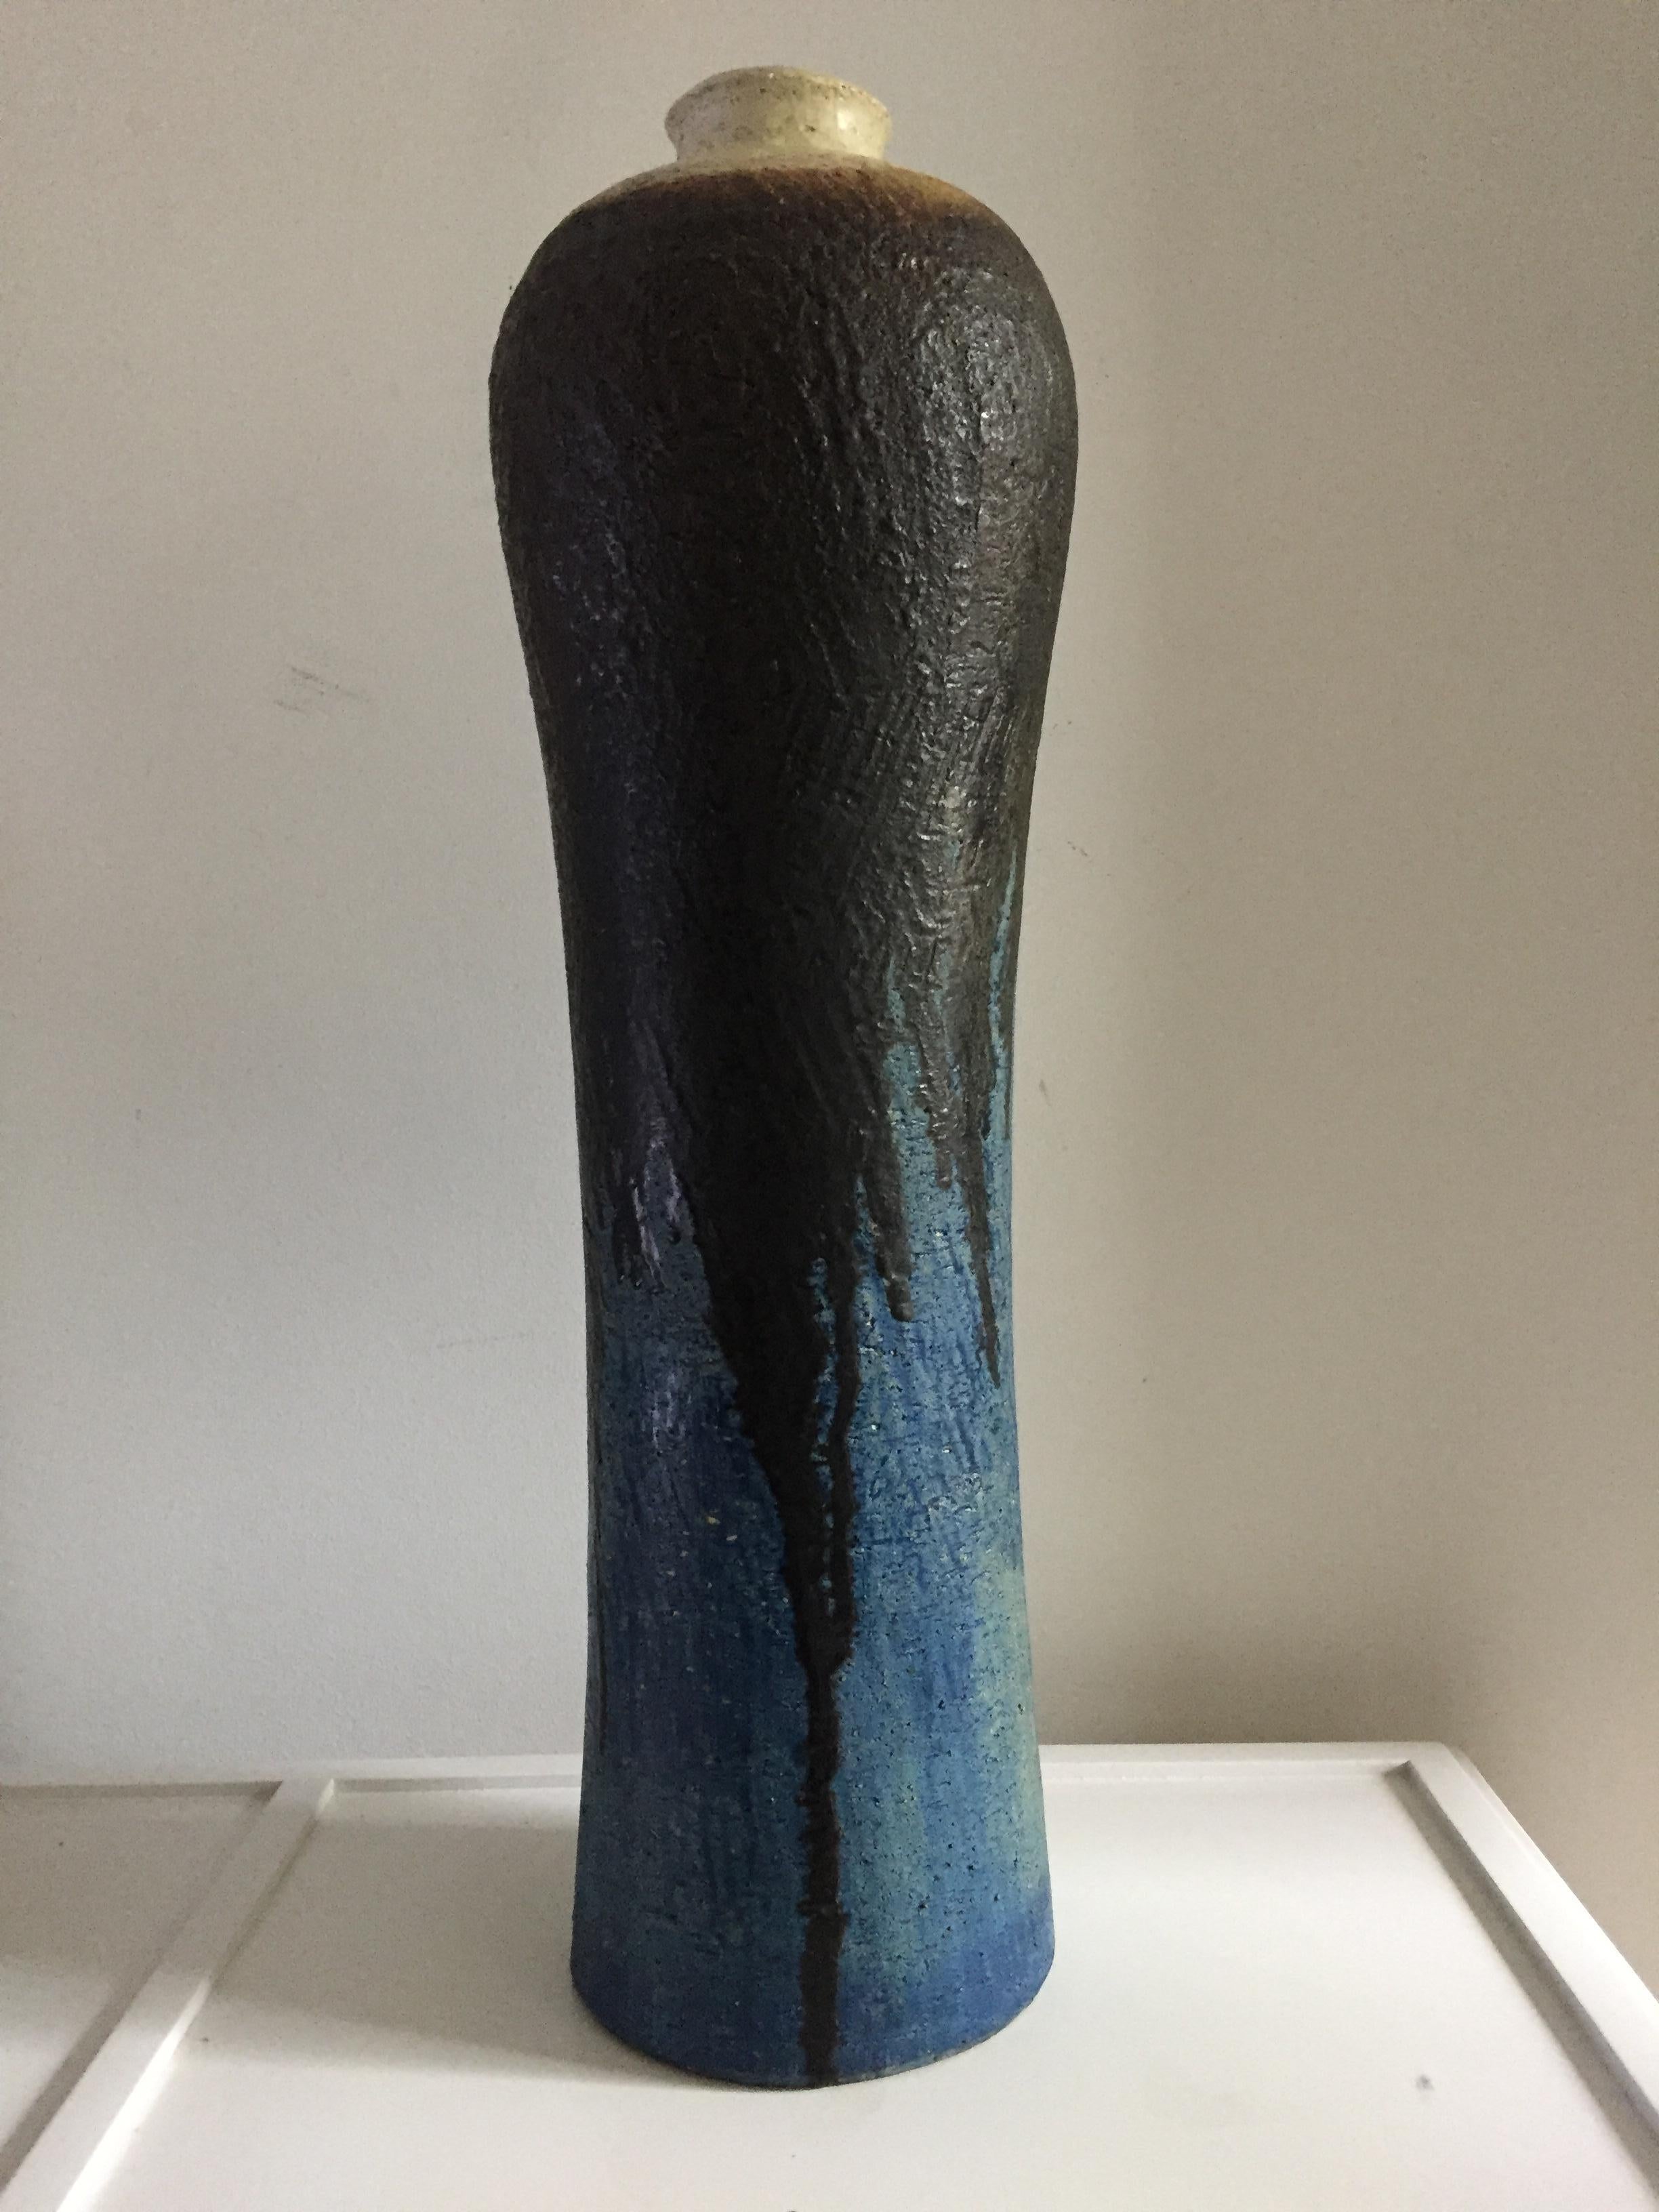 Vase monumental en céramique de Marcello Fantoni signé et numéroté pour Raymor, haut et cannelé au sommet de la crème avec une glaçure noire s'égouttant sur une texture et des teintes bleues et turquoises.